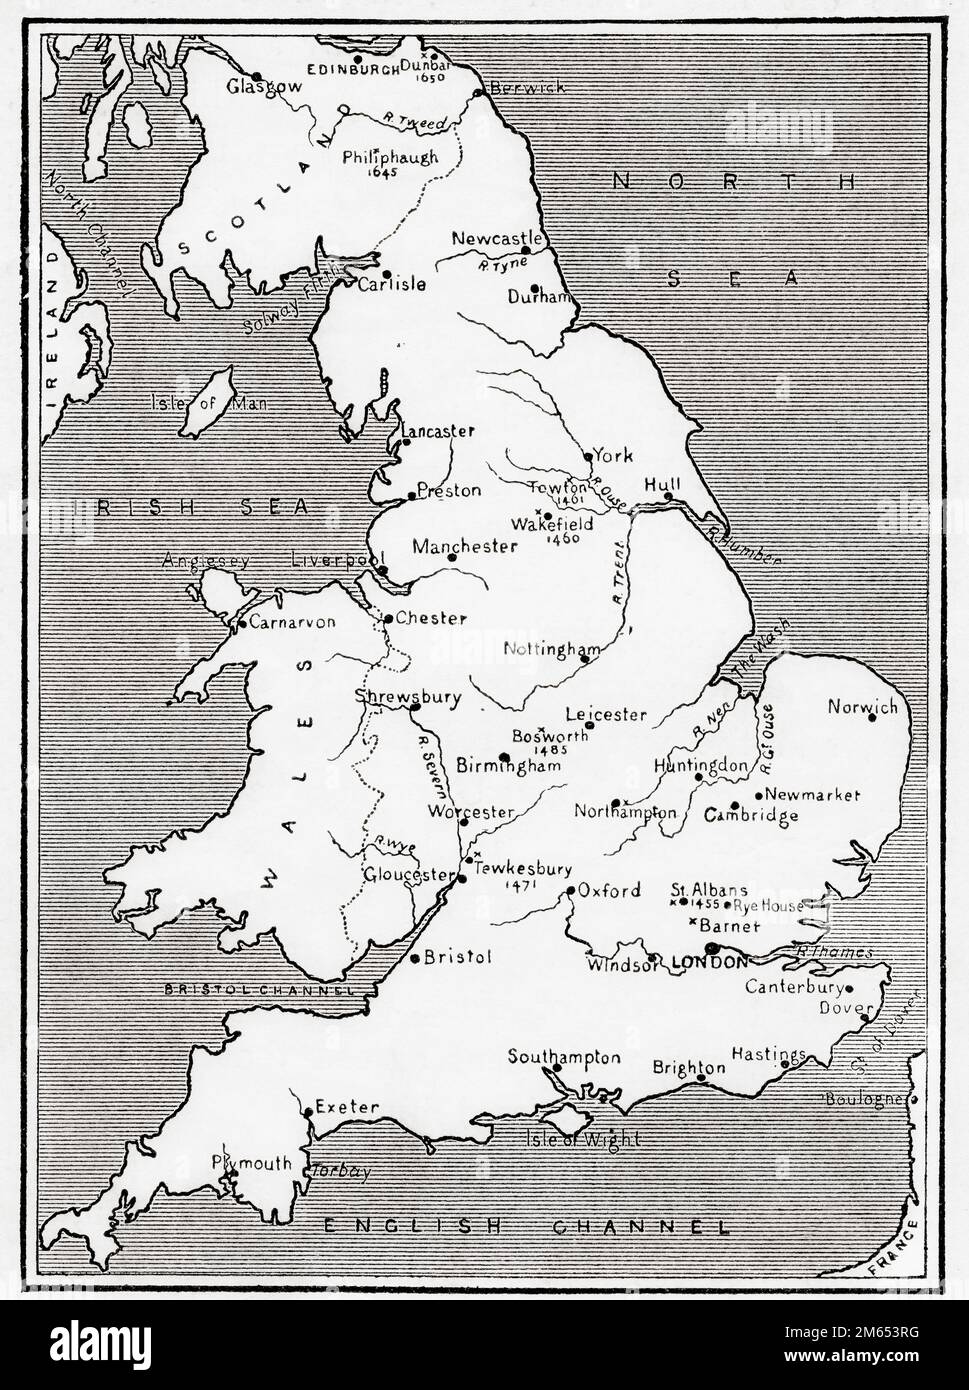 Karte von England mit Rosenkriegen aus dem 15. Jahrhundert. Aus der Geschichte Englands, veröffentlicht 1907 Stockfoto